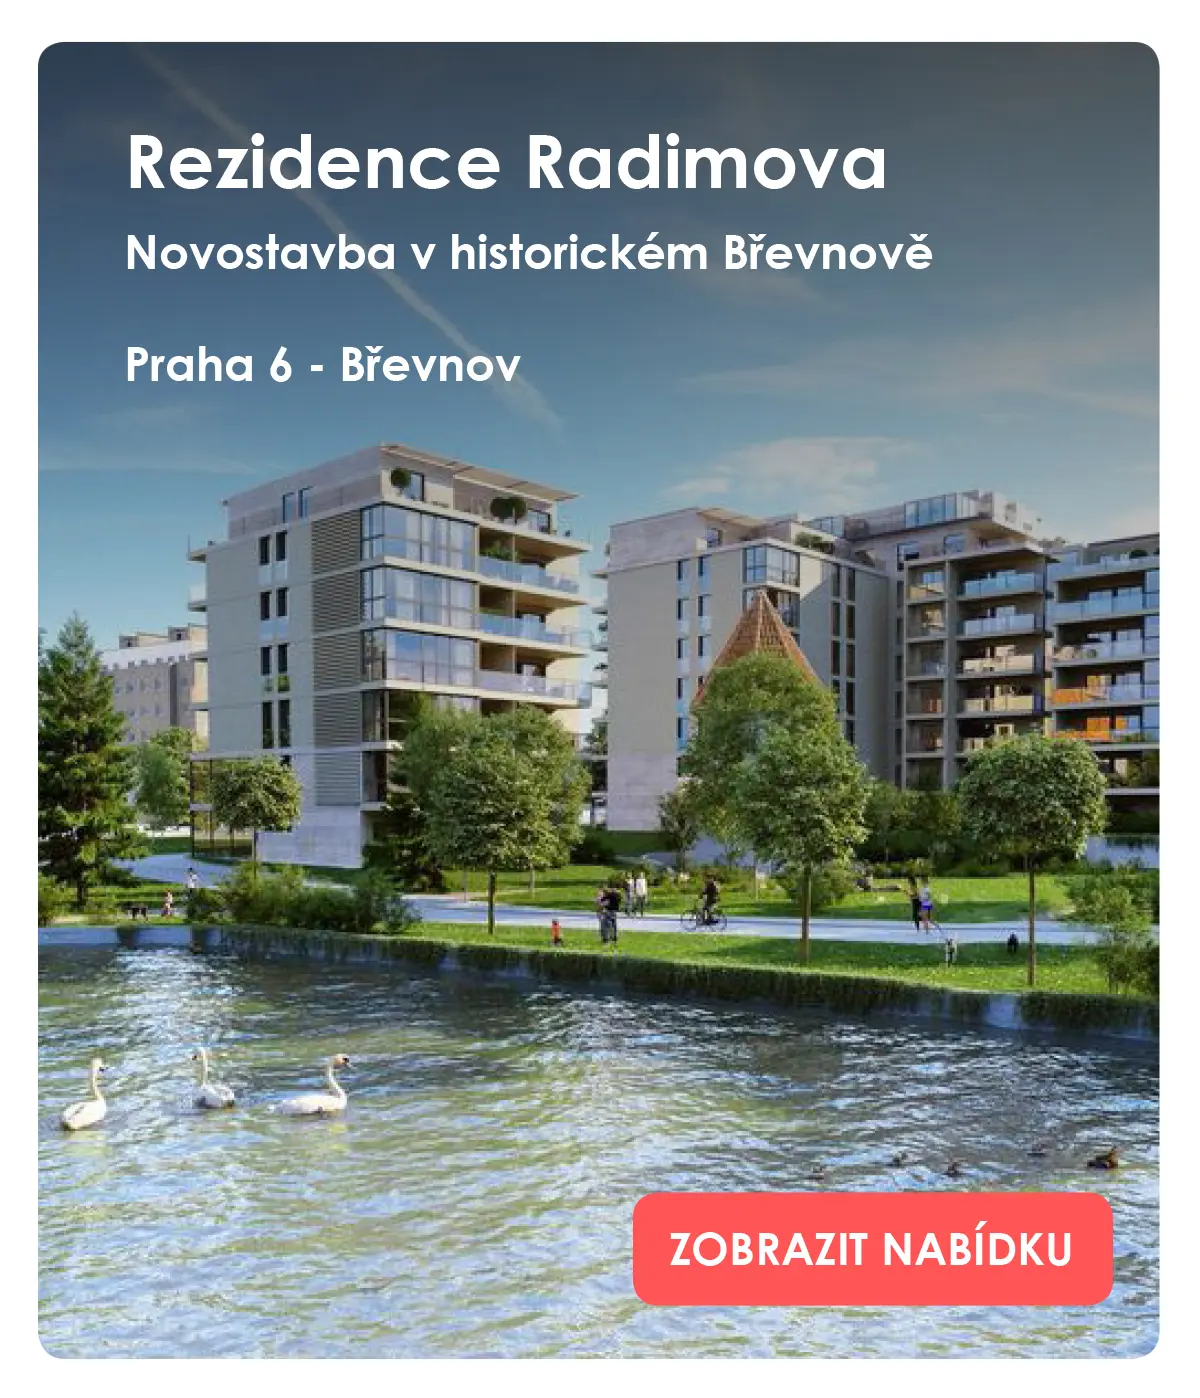 Moderní nízkoenergetické apartmány v Krkonoších